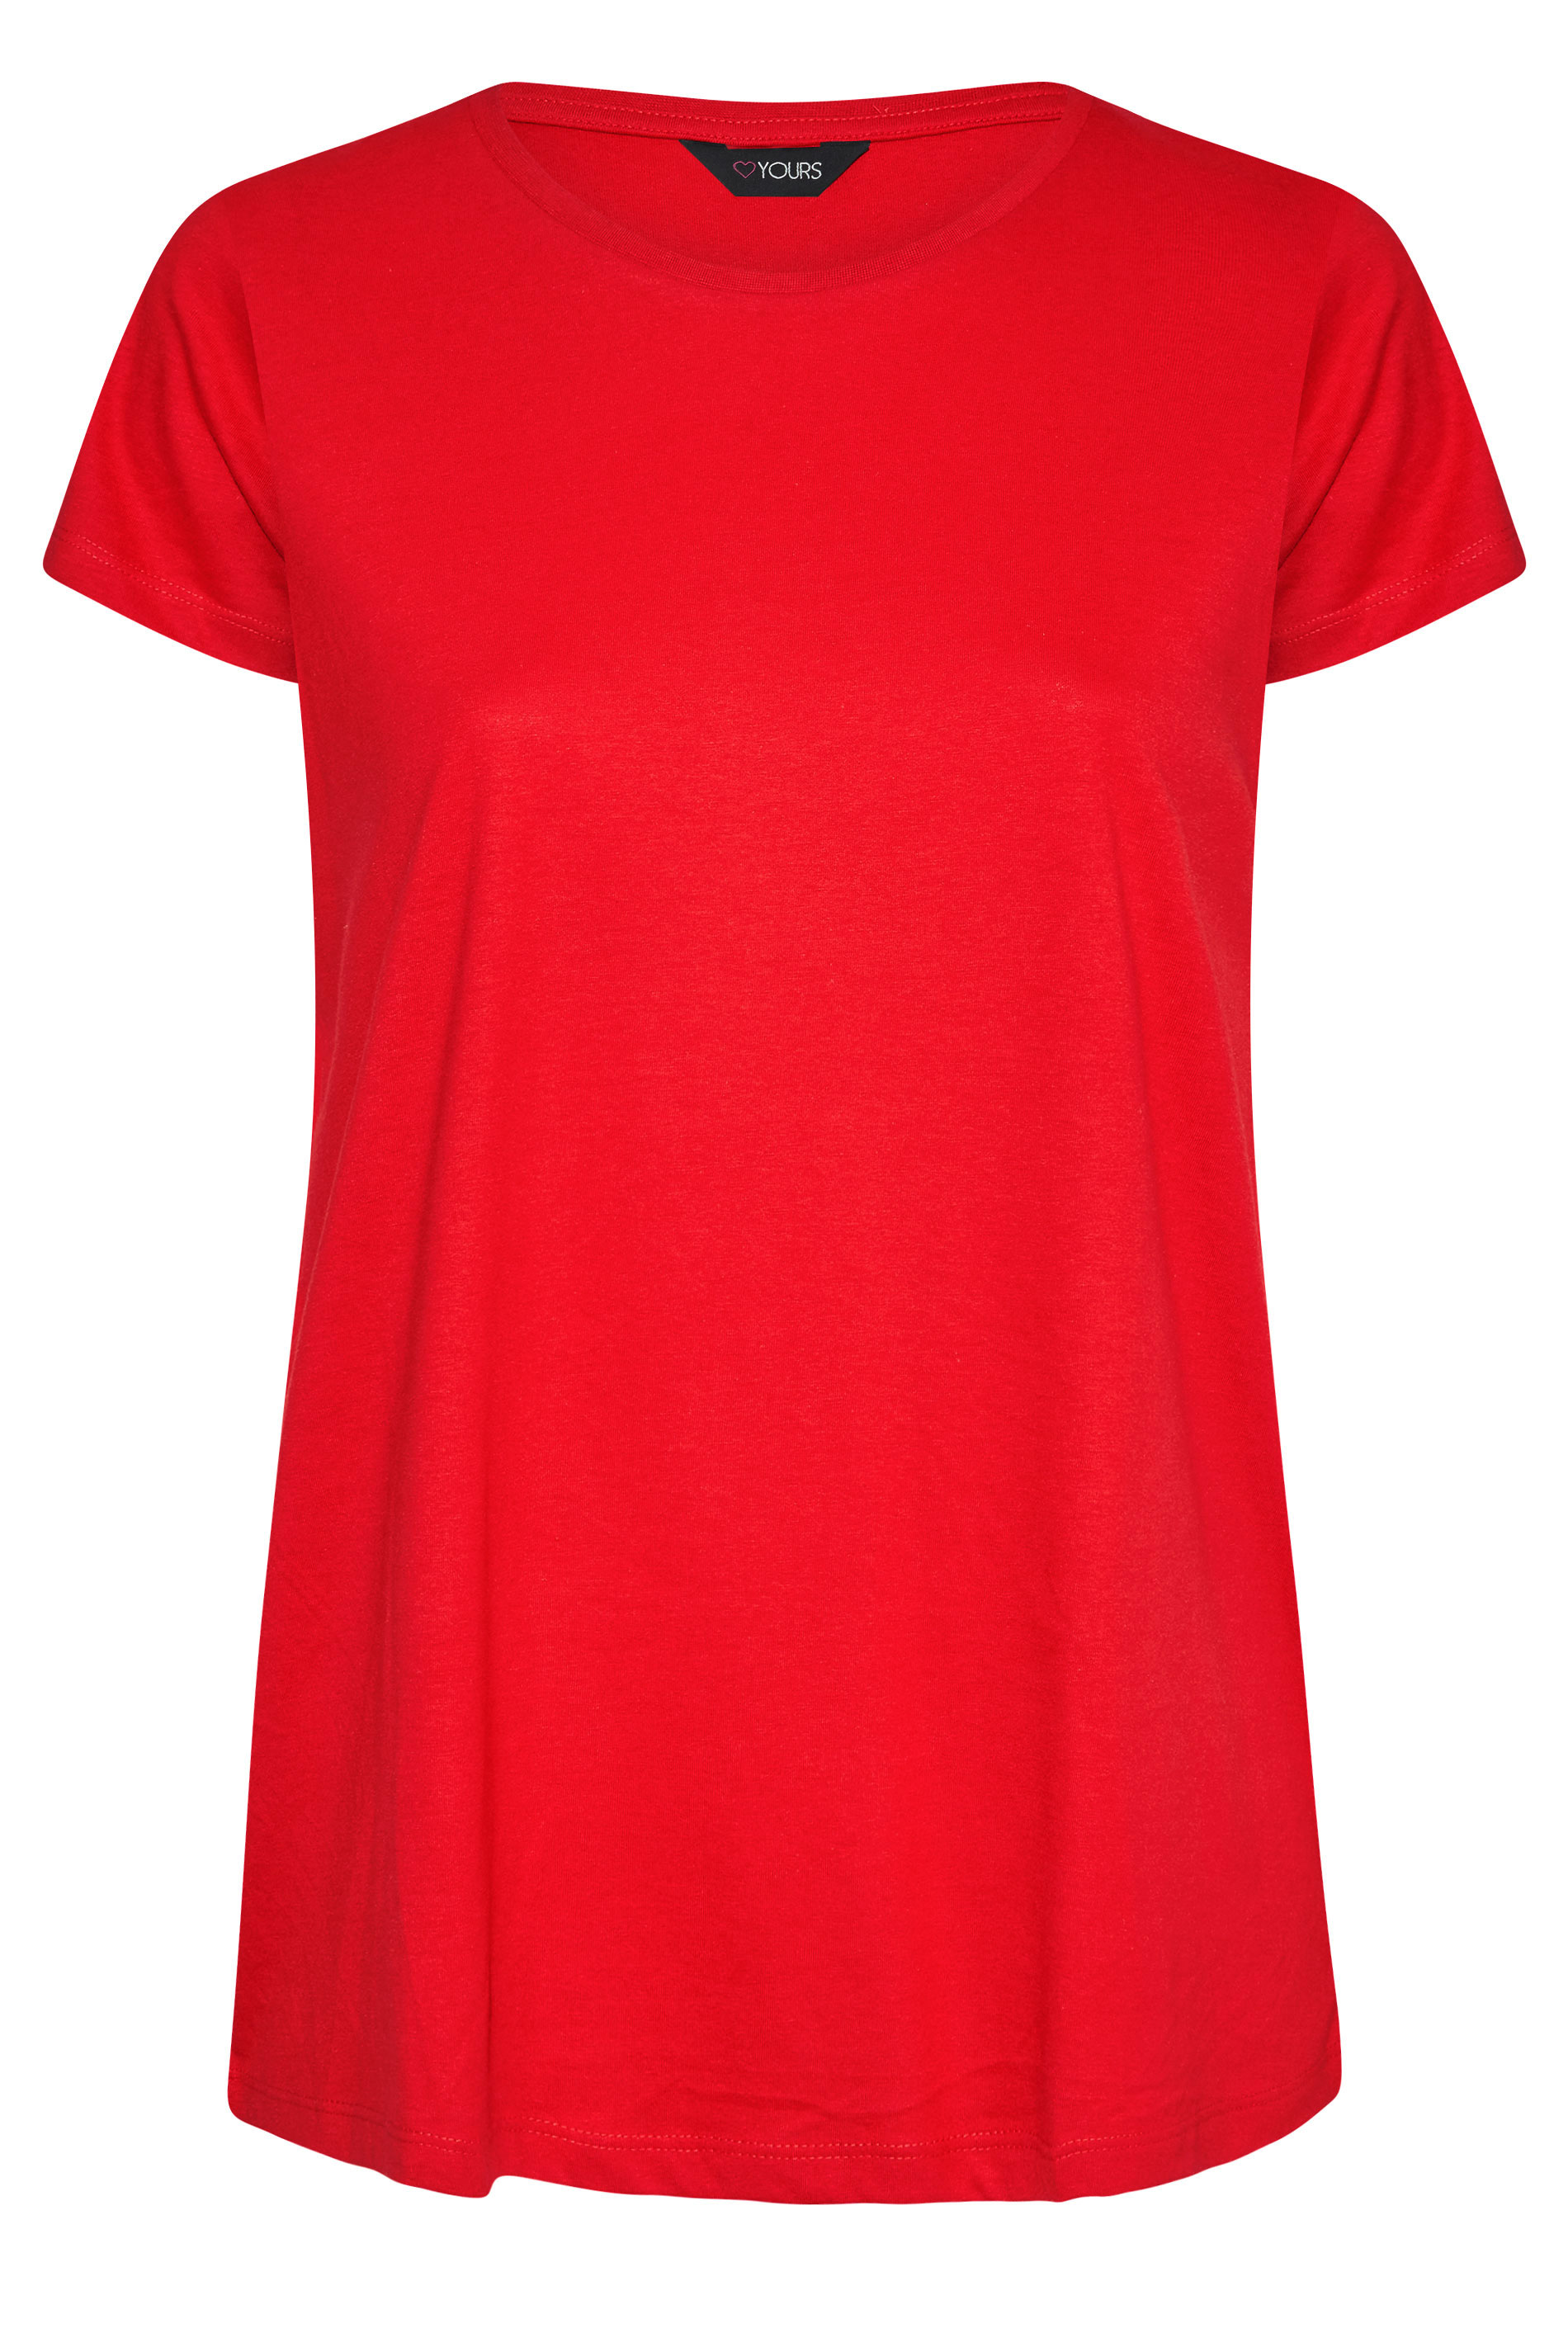 Grande taille  Tops Grande taille  T-Shirts Basiques & Débardeurs | T-Shirt Rouge en Jersey Manches Courtes - LP63815